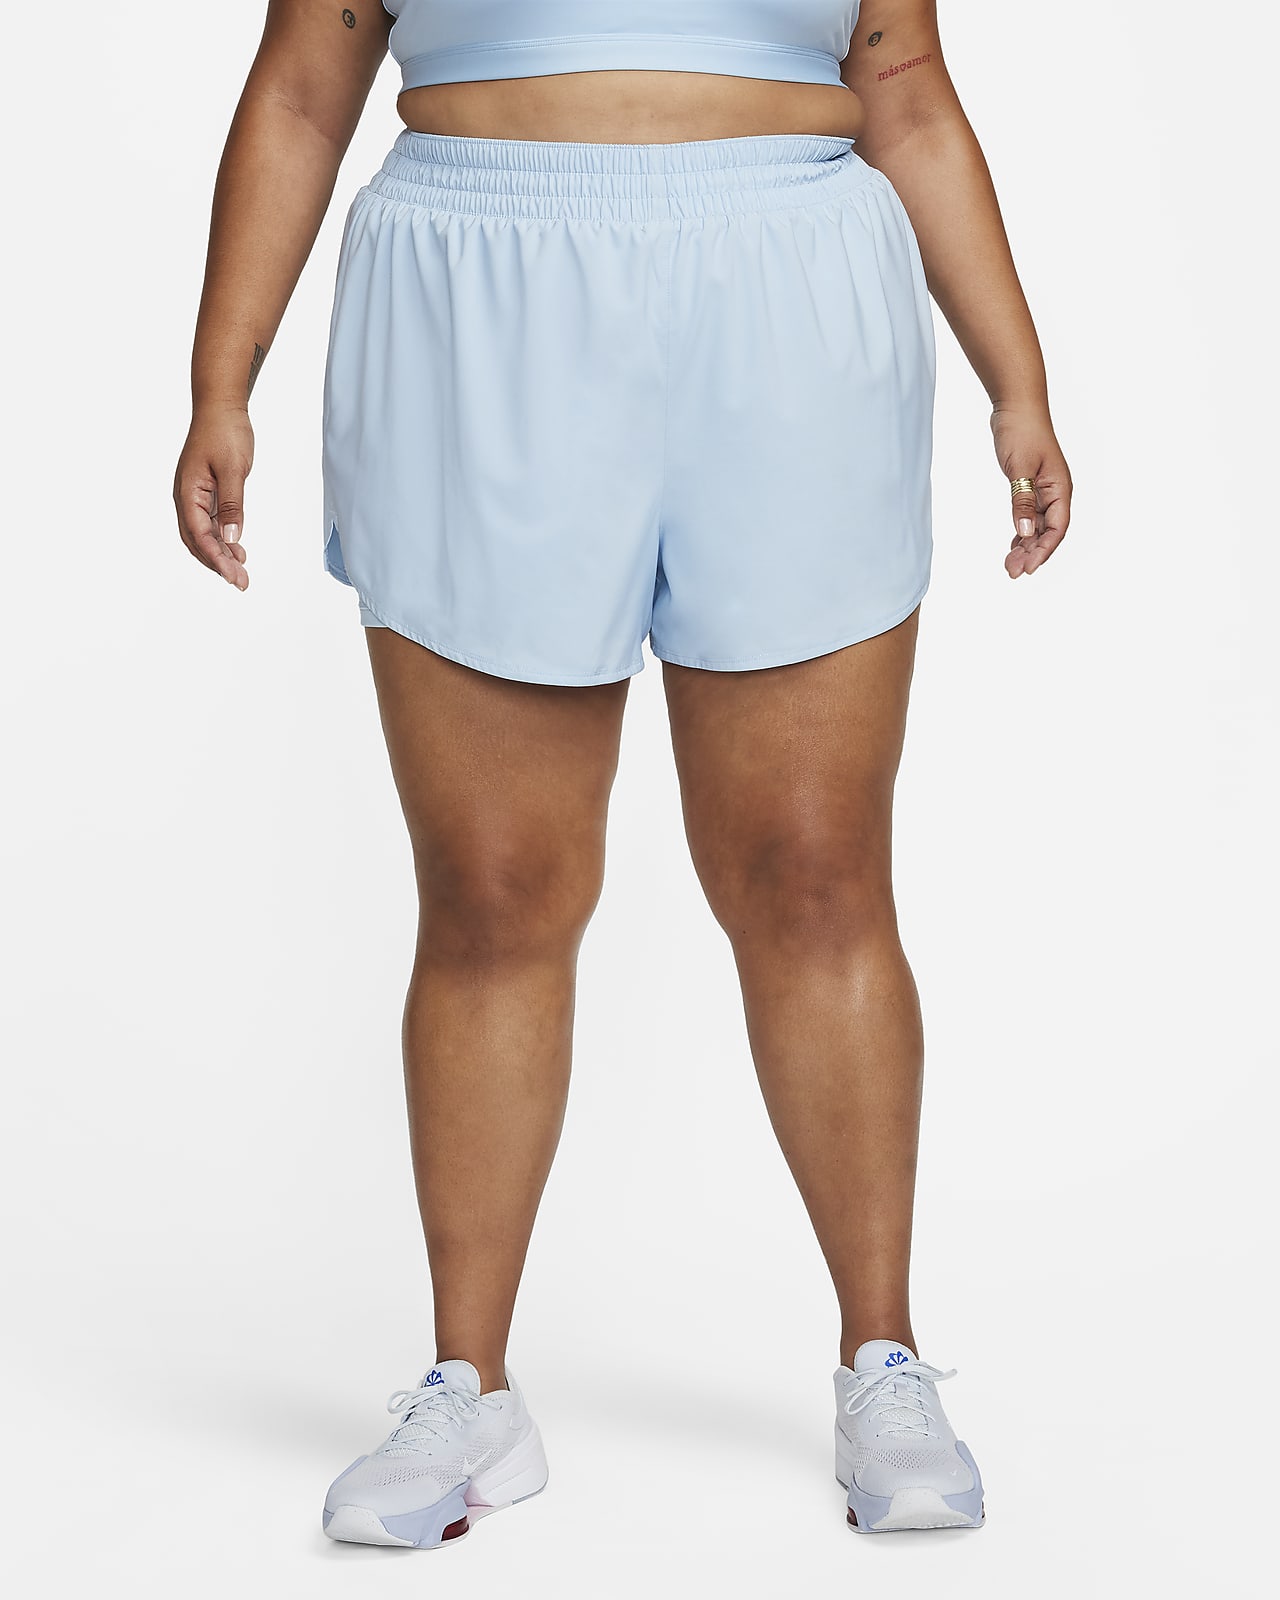 Shorts de tiro alto de 8 cm 2 en 1 para mujer (talla grande) Nike Dri-FIT One